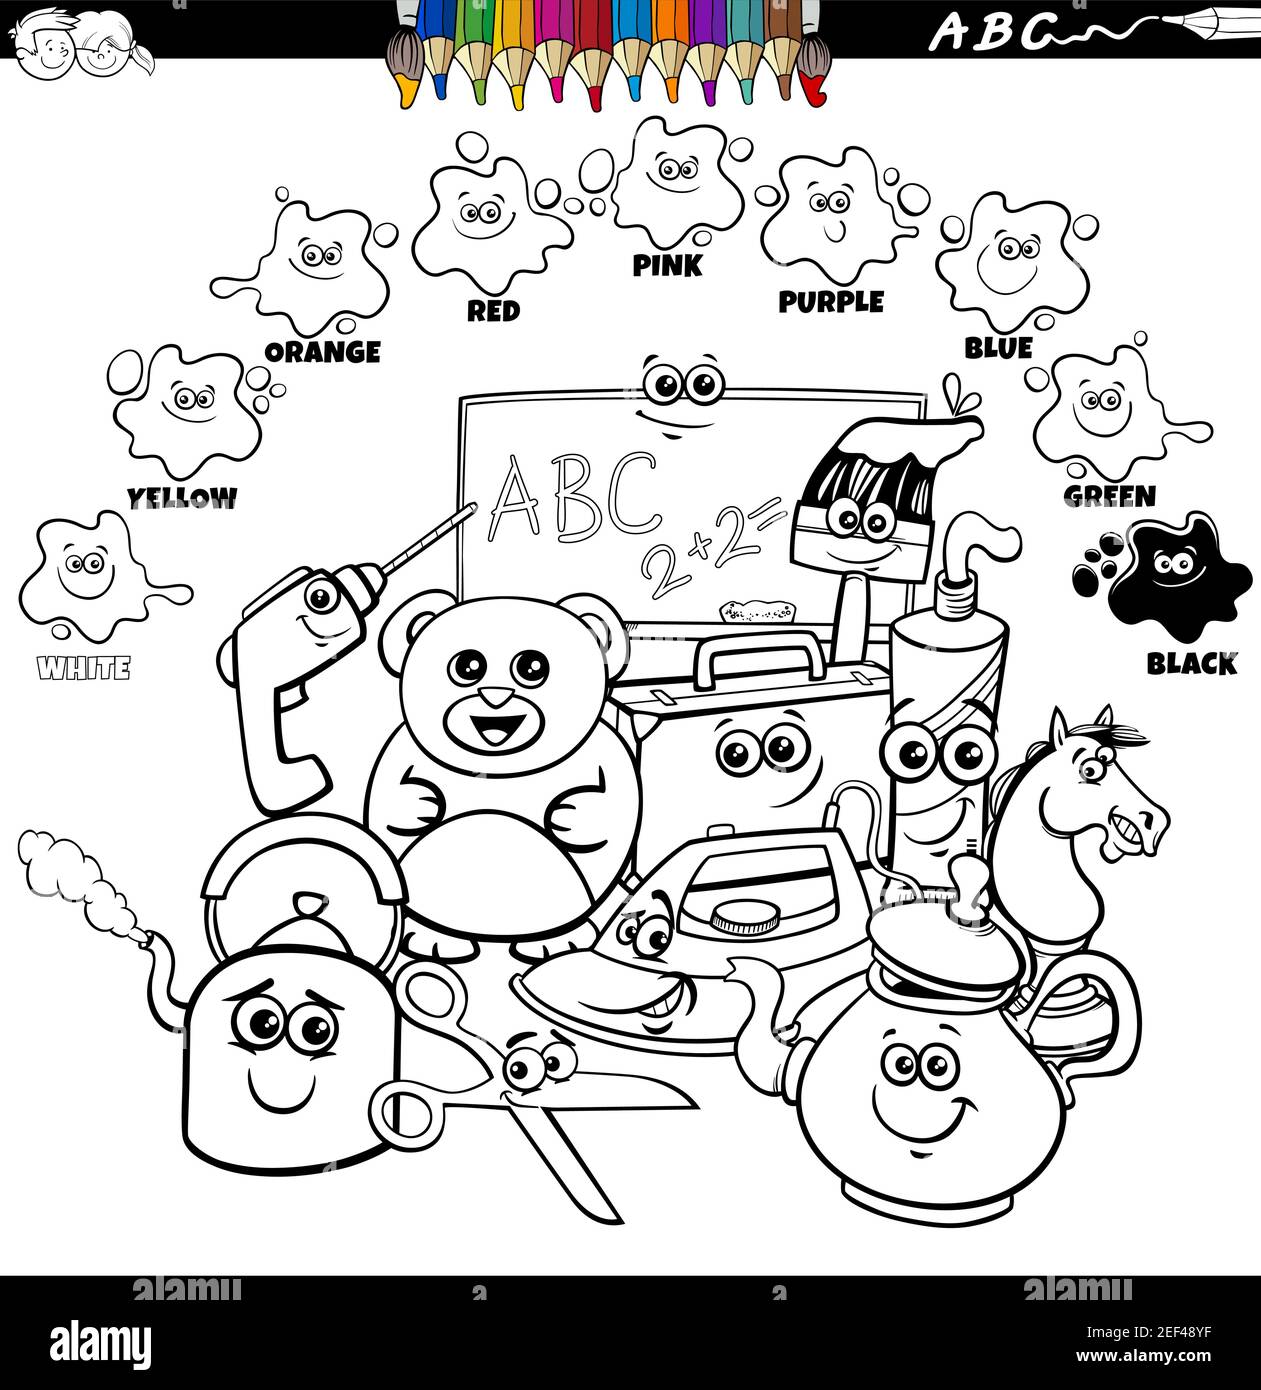 https://c8.alamy.com/compes/2ef48yf/dibujo-de-dibujos-animados-educativos-en-blanco-y-negro-de-colores-basicos-para-los-ninos-con-objetos-comics-grupo-colorear-libro-pagina-2ef48yf.jpg